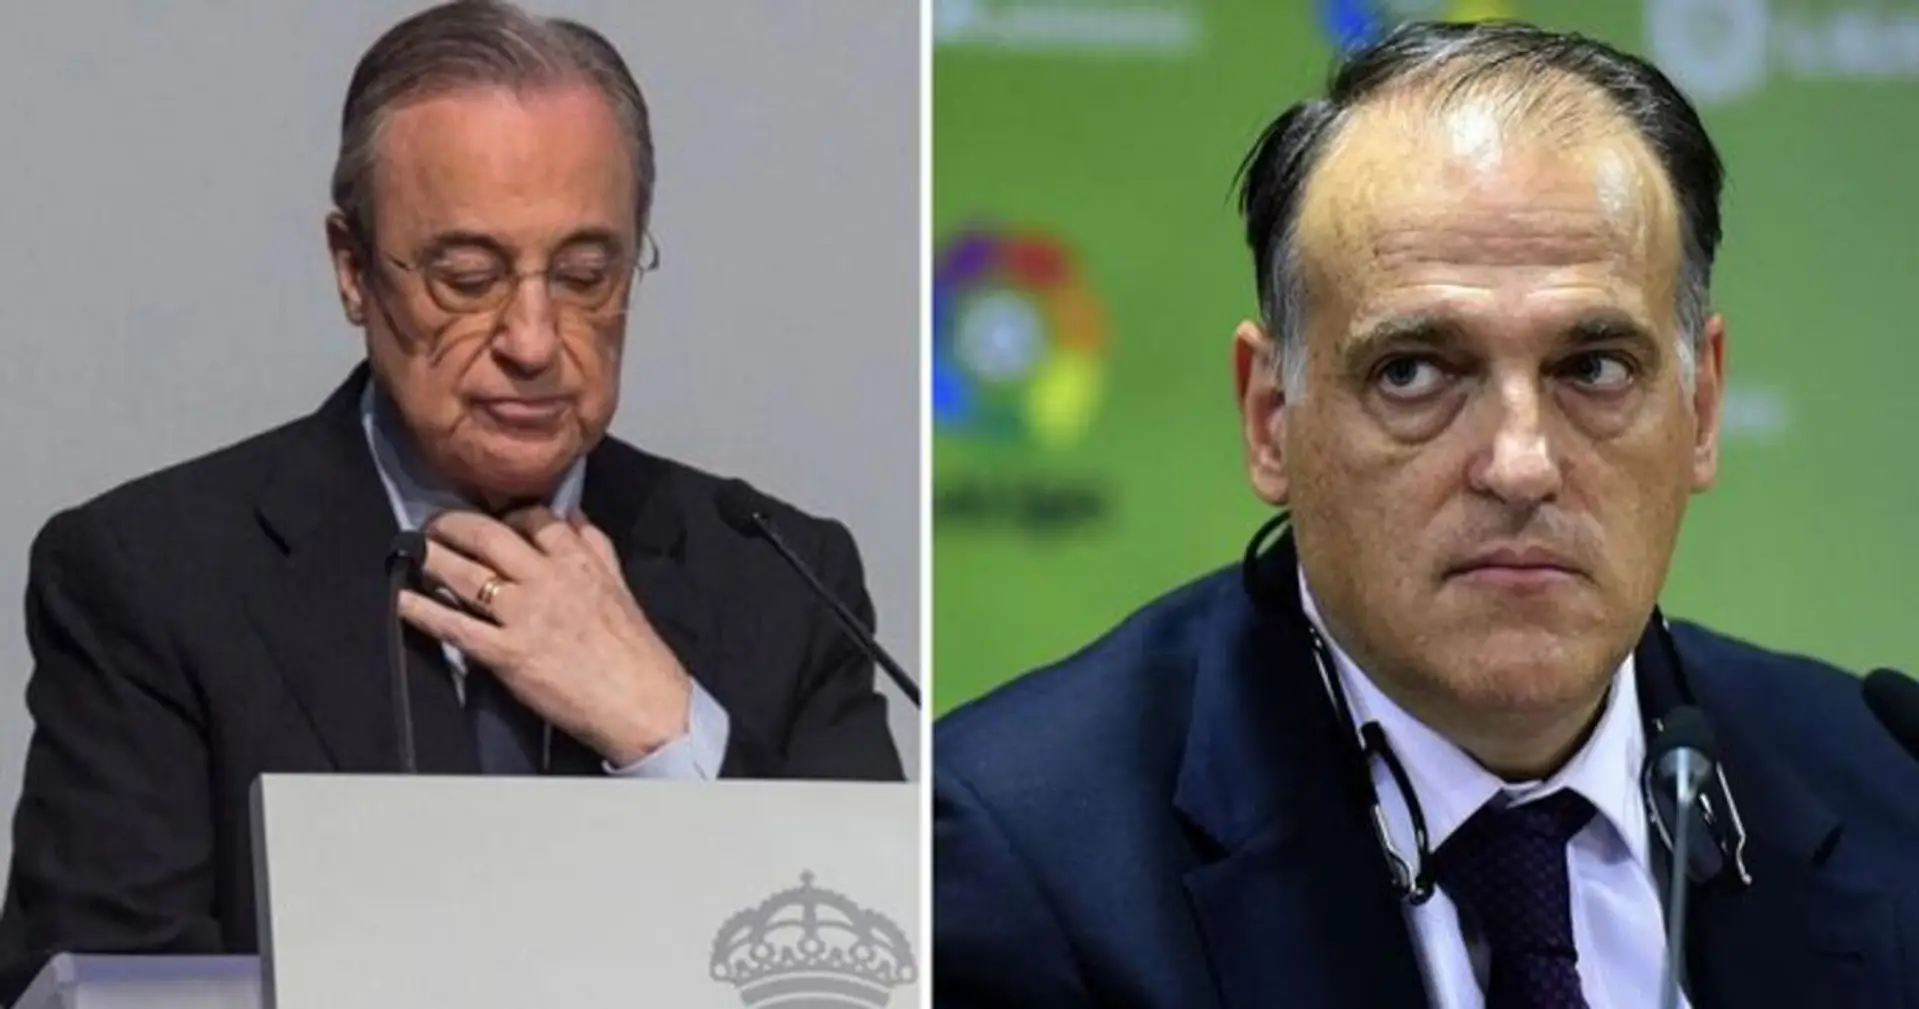 Continúa la batalla: el Real Madrid 'presenta una denuncia penal' contra Tebas por administración injusta y fraude